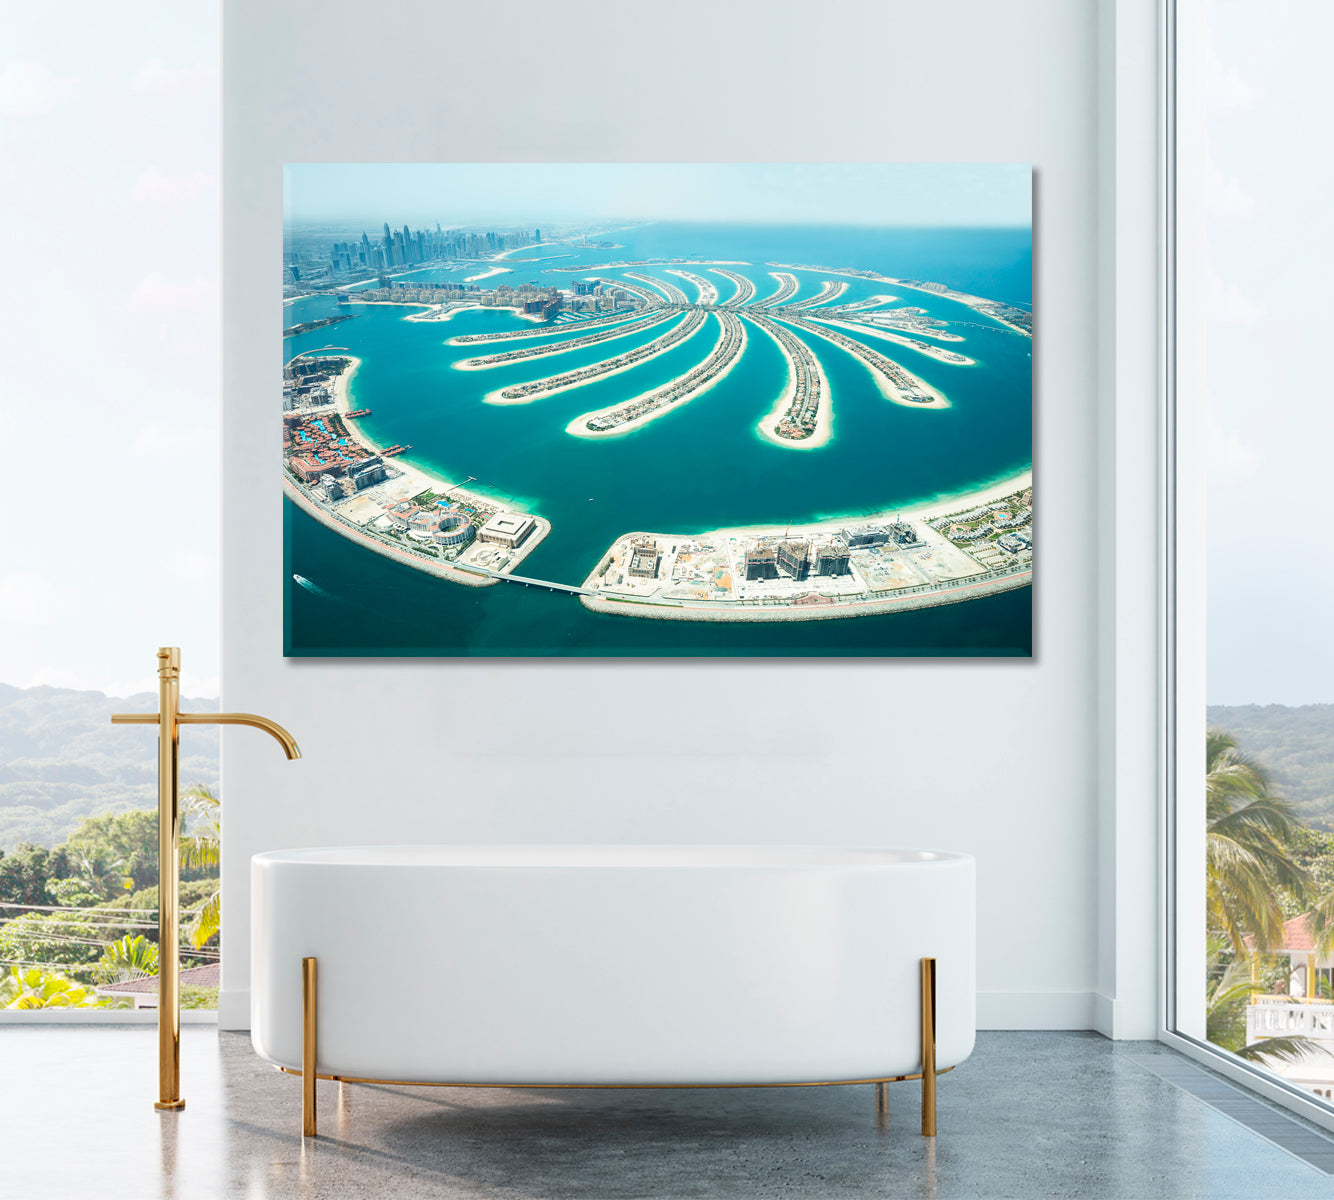 Jumeirah Palm Island Dubai Canvas Print ArtLexy 1 Panel 24"x16" inches 